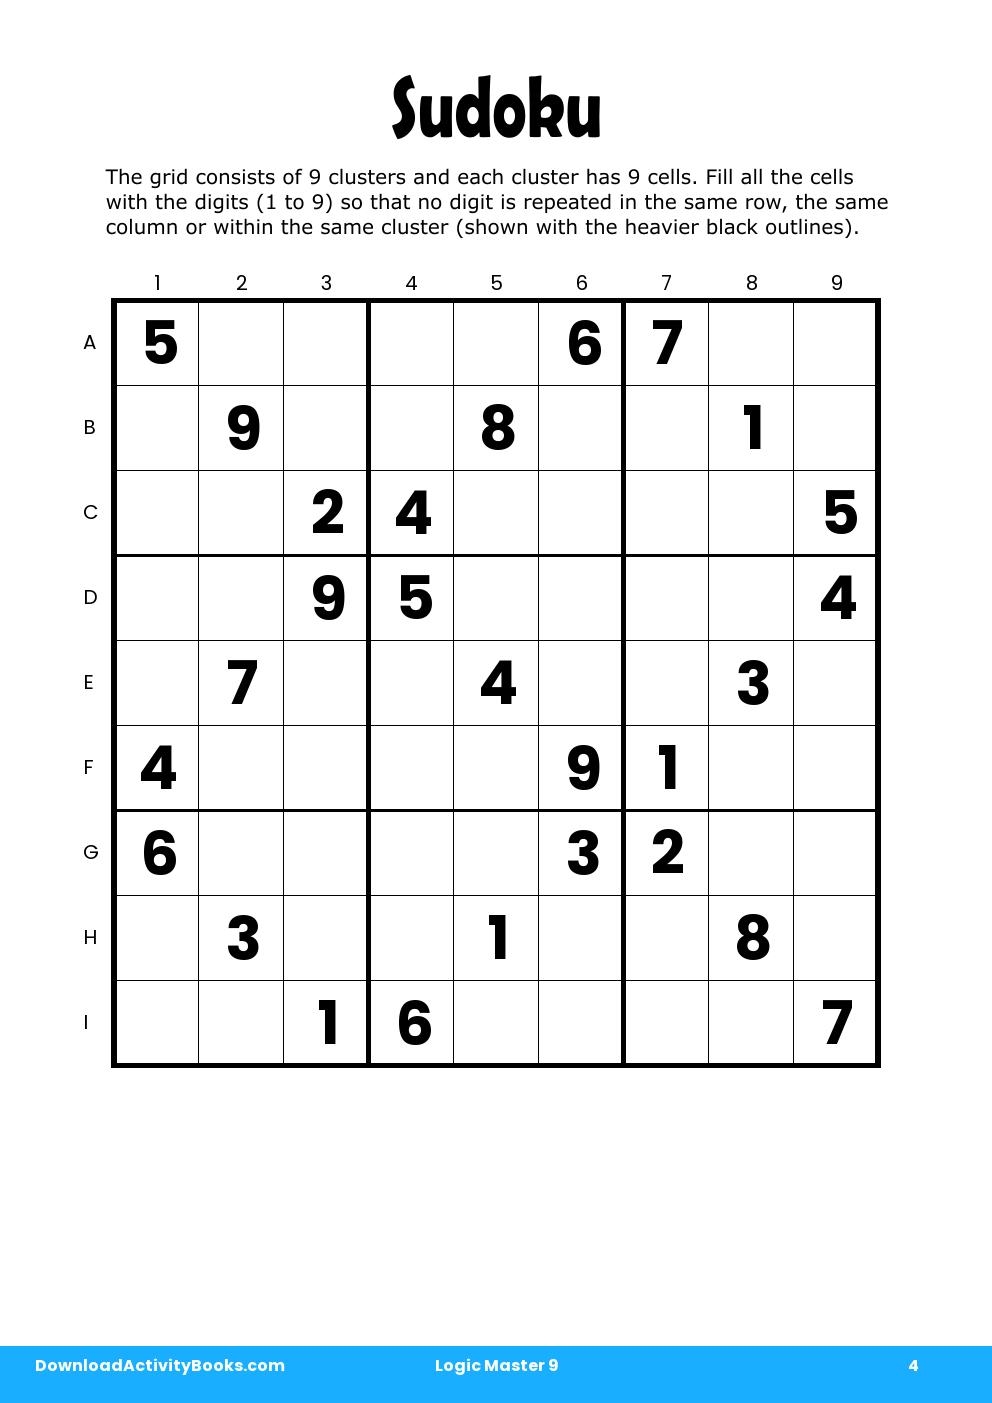 Sudoku in Logic Master 9